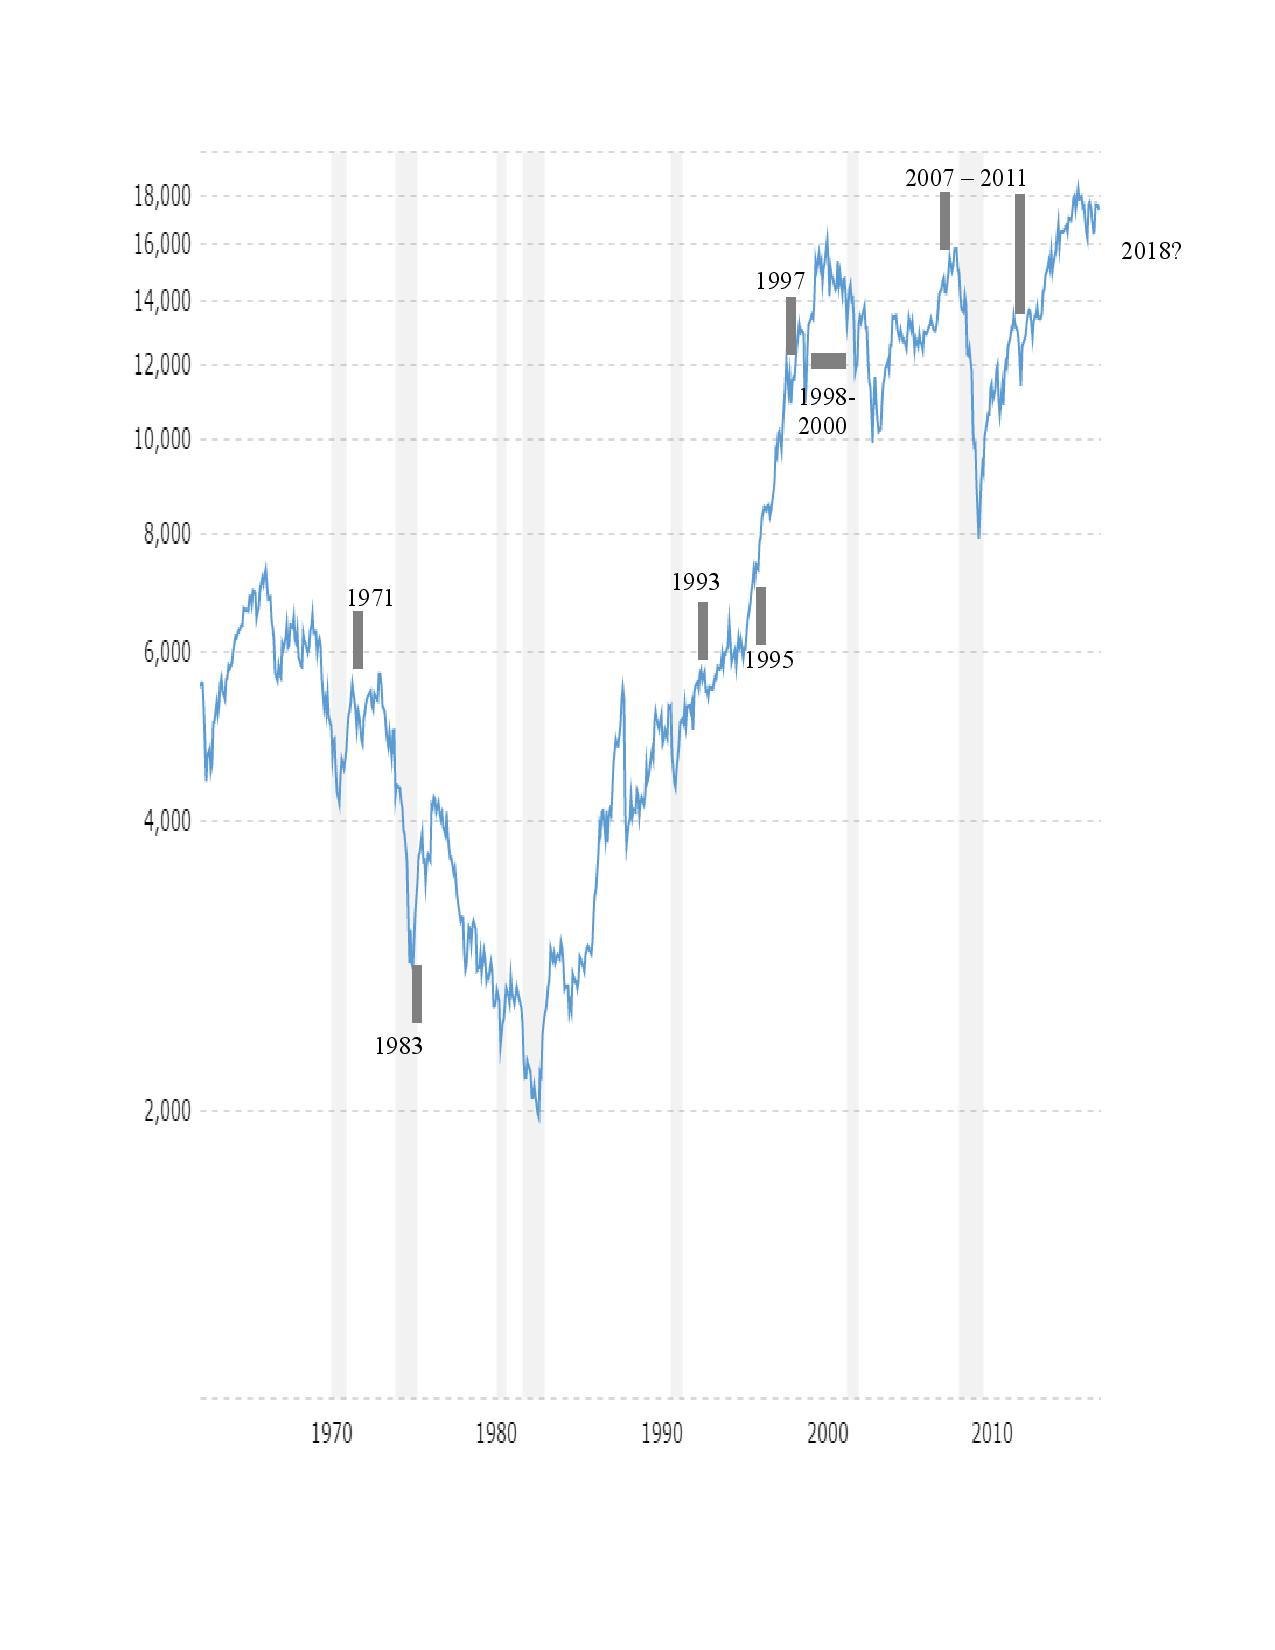 Dow Jones 50 Year Chart